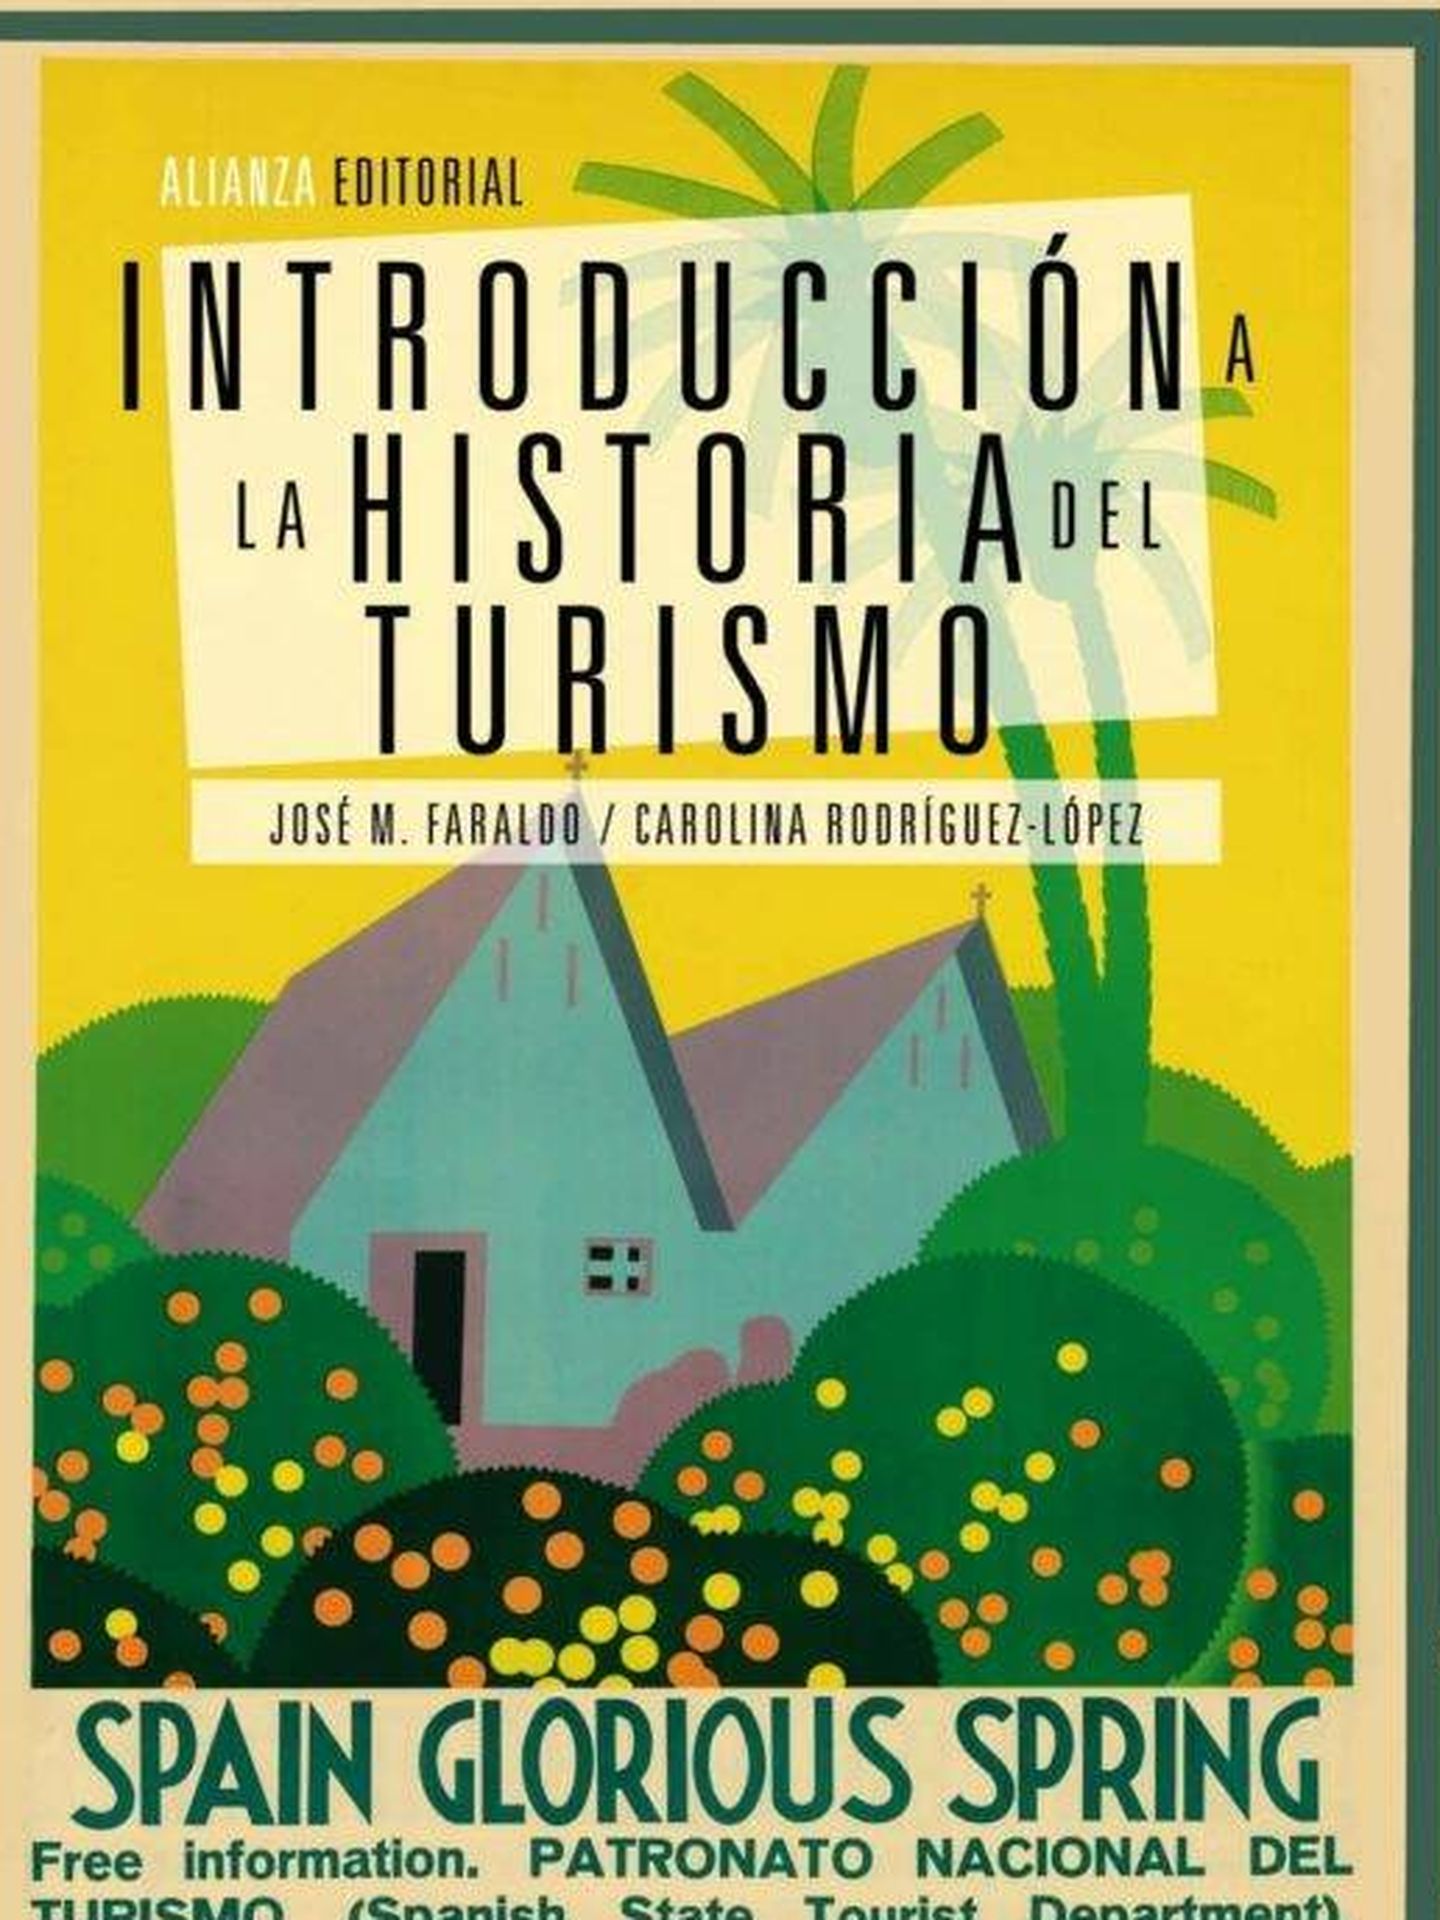 Portada de 'Introducción a la historia del turismo' de José M. Faraldo y Carolina Rodríguez-López. 